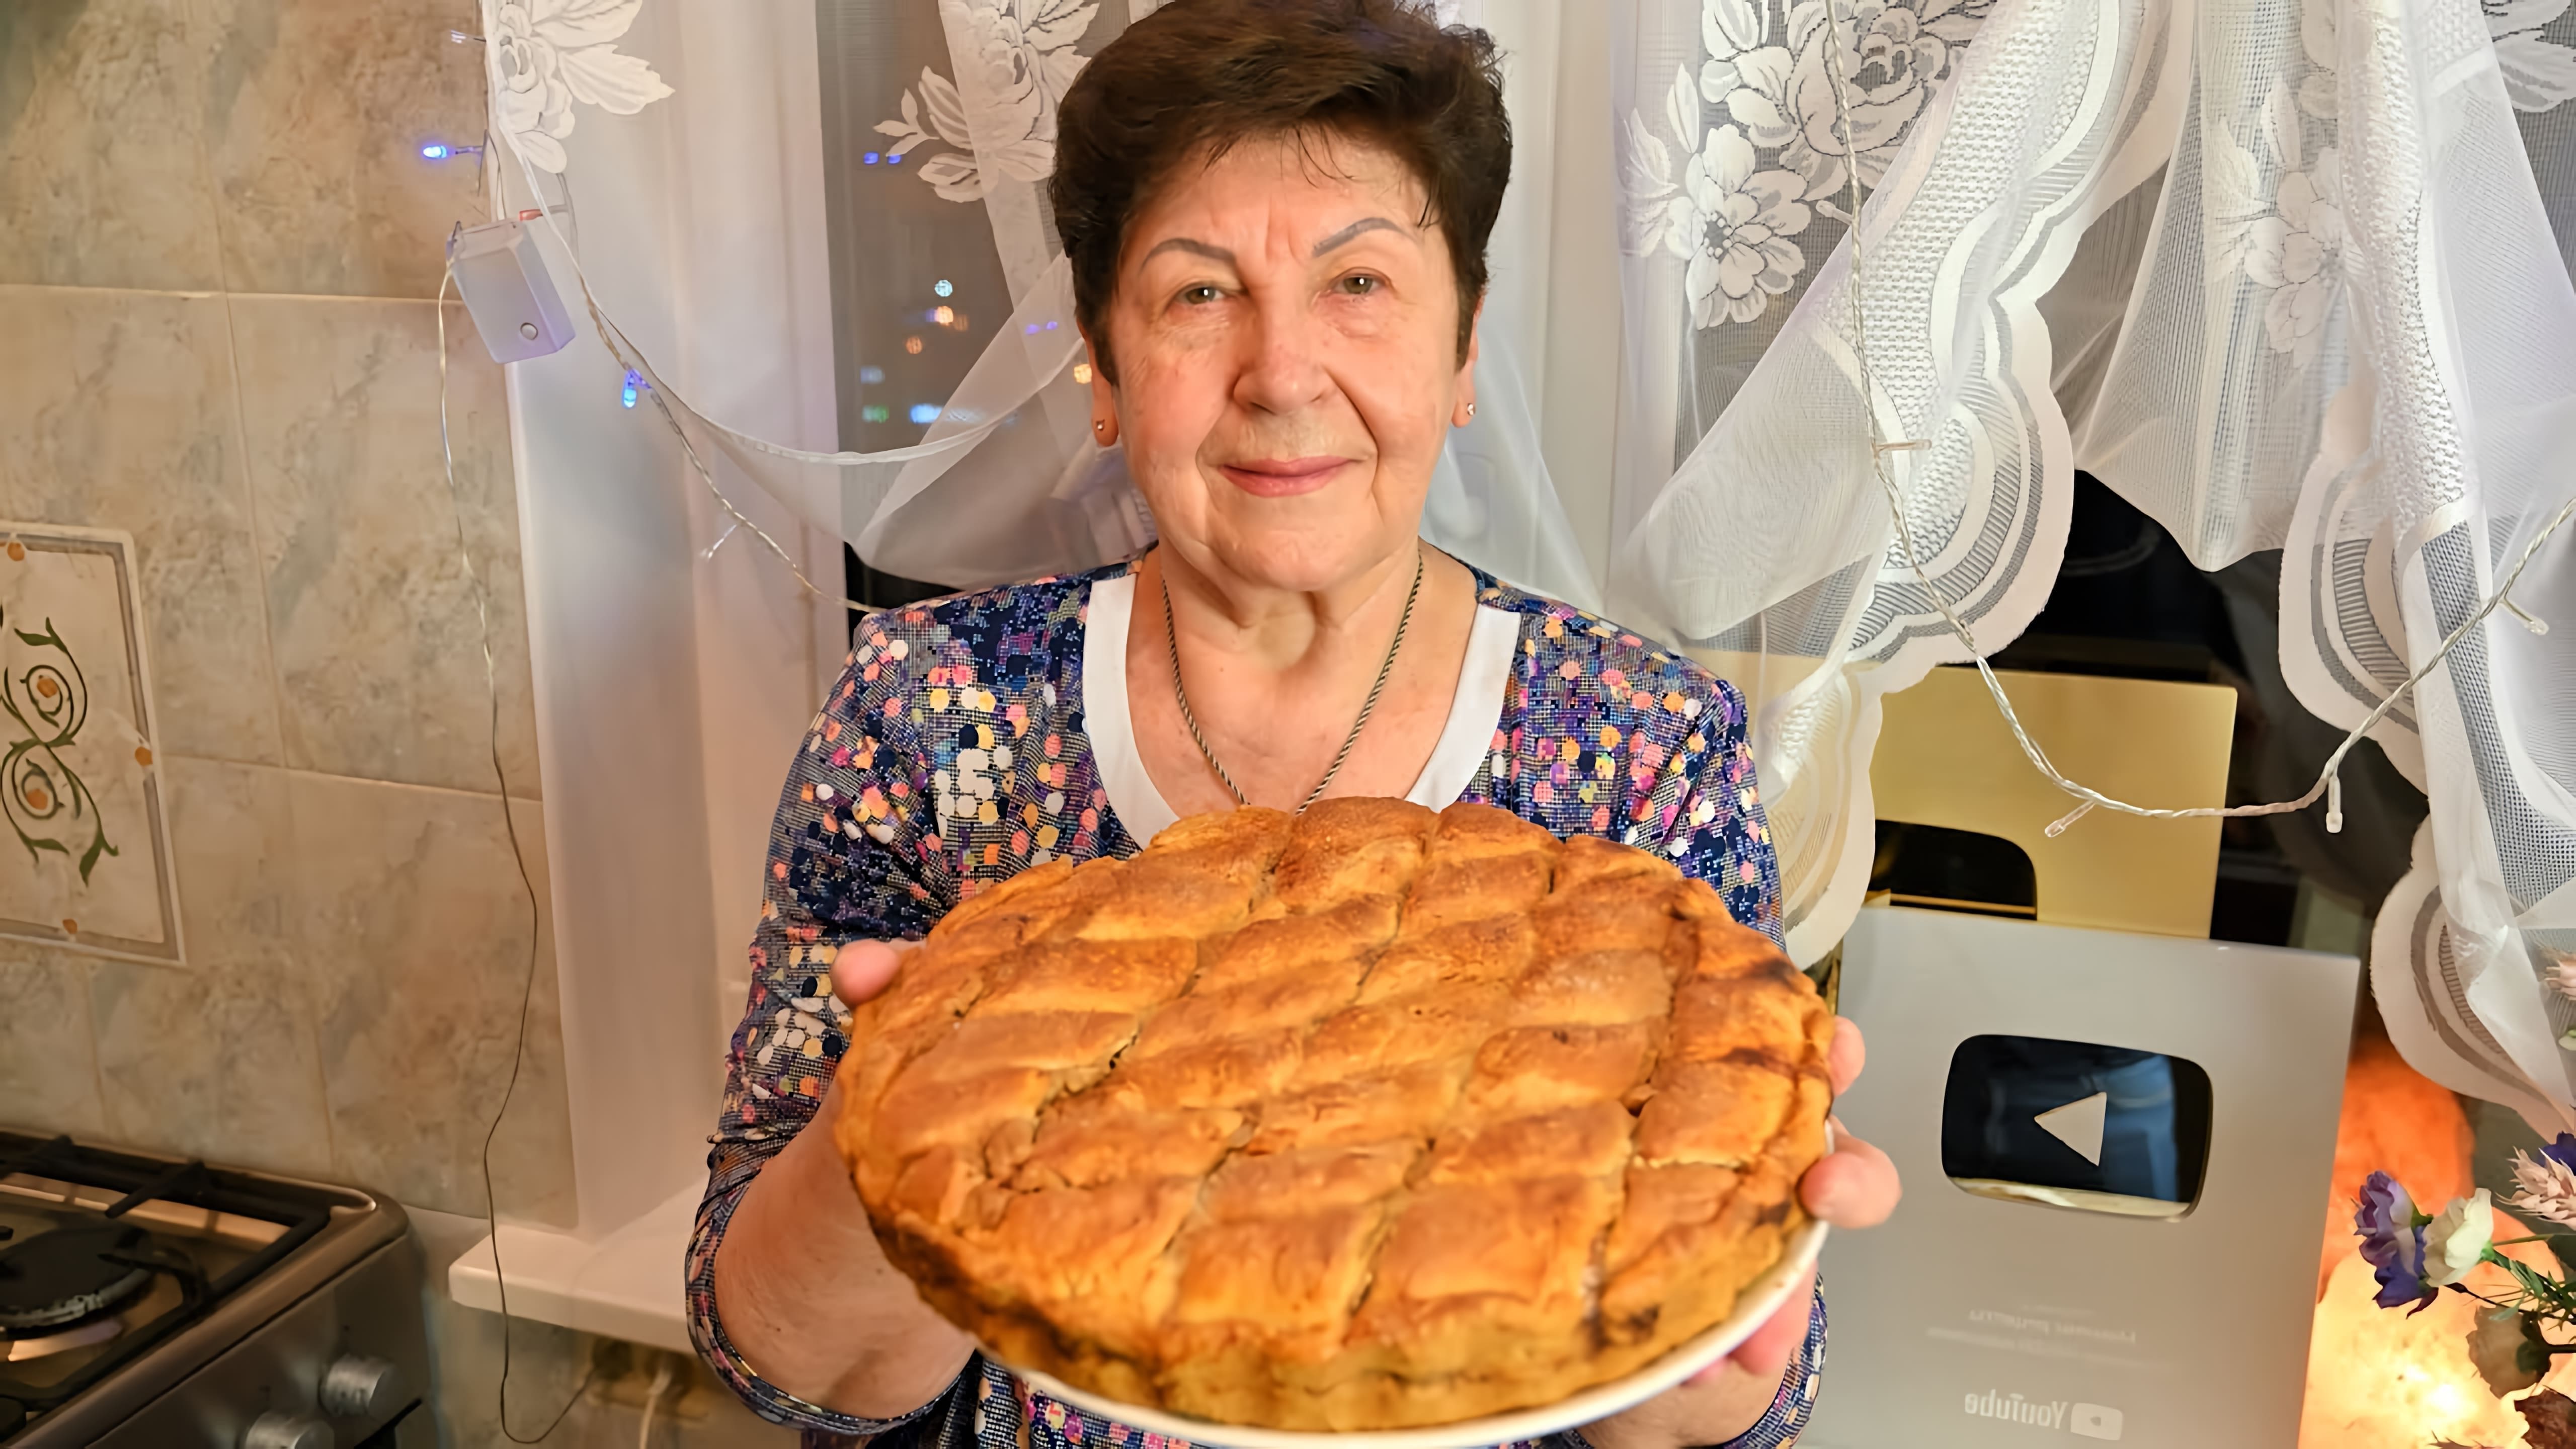 В этом видео демонстрируется процесс приготовления крещенского пирога с орехами